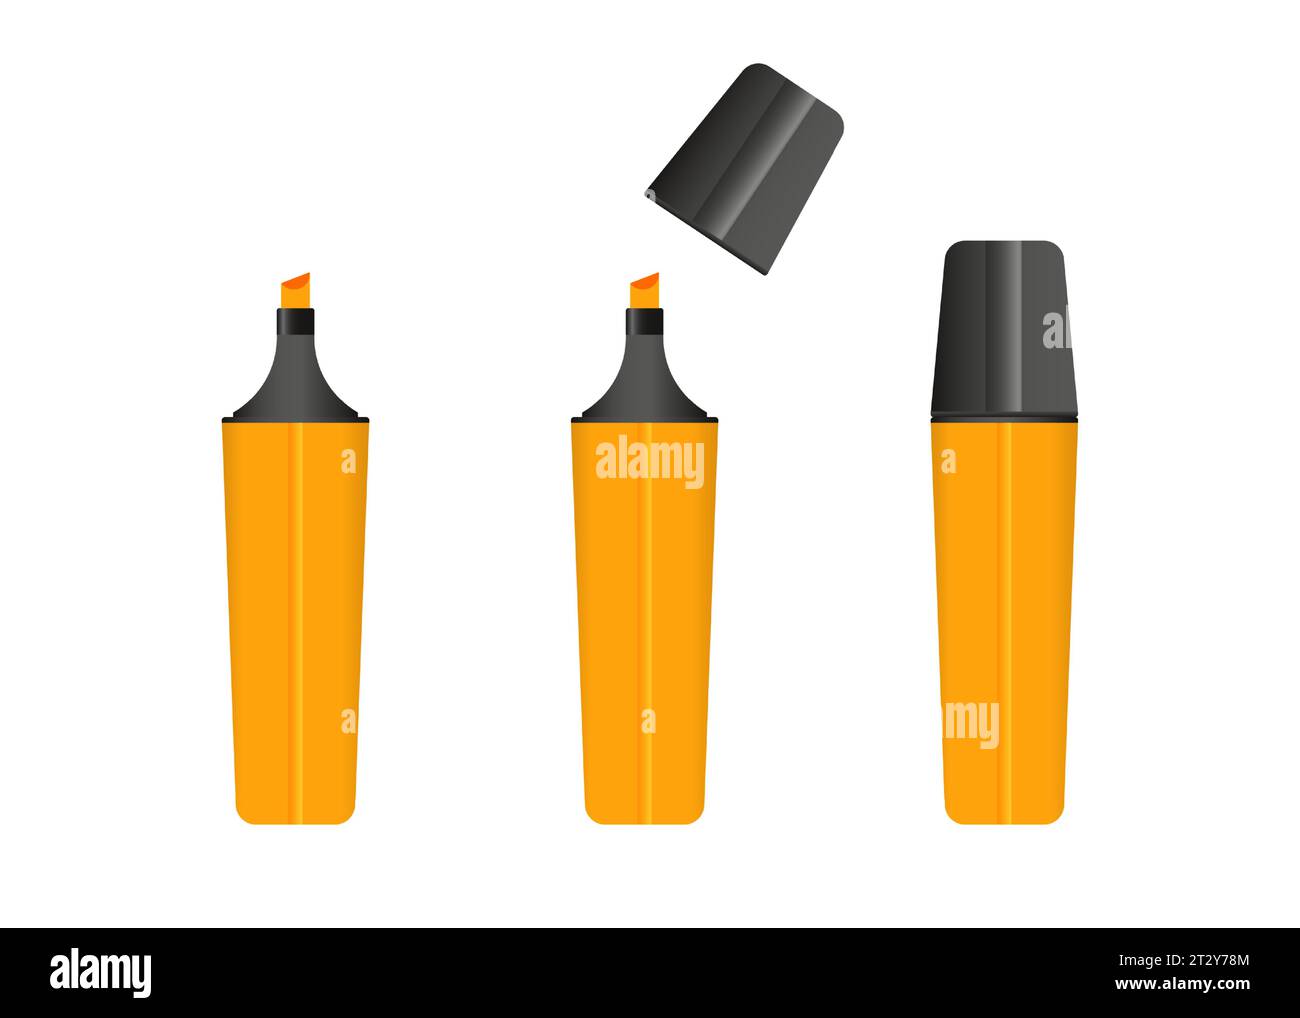 Evidenziatore arancione, 3 versioni di marcatore di colore arancione. Insieme di vettori. Illustrazione Vettoriale